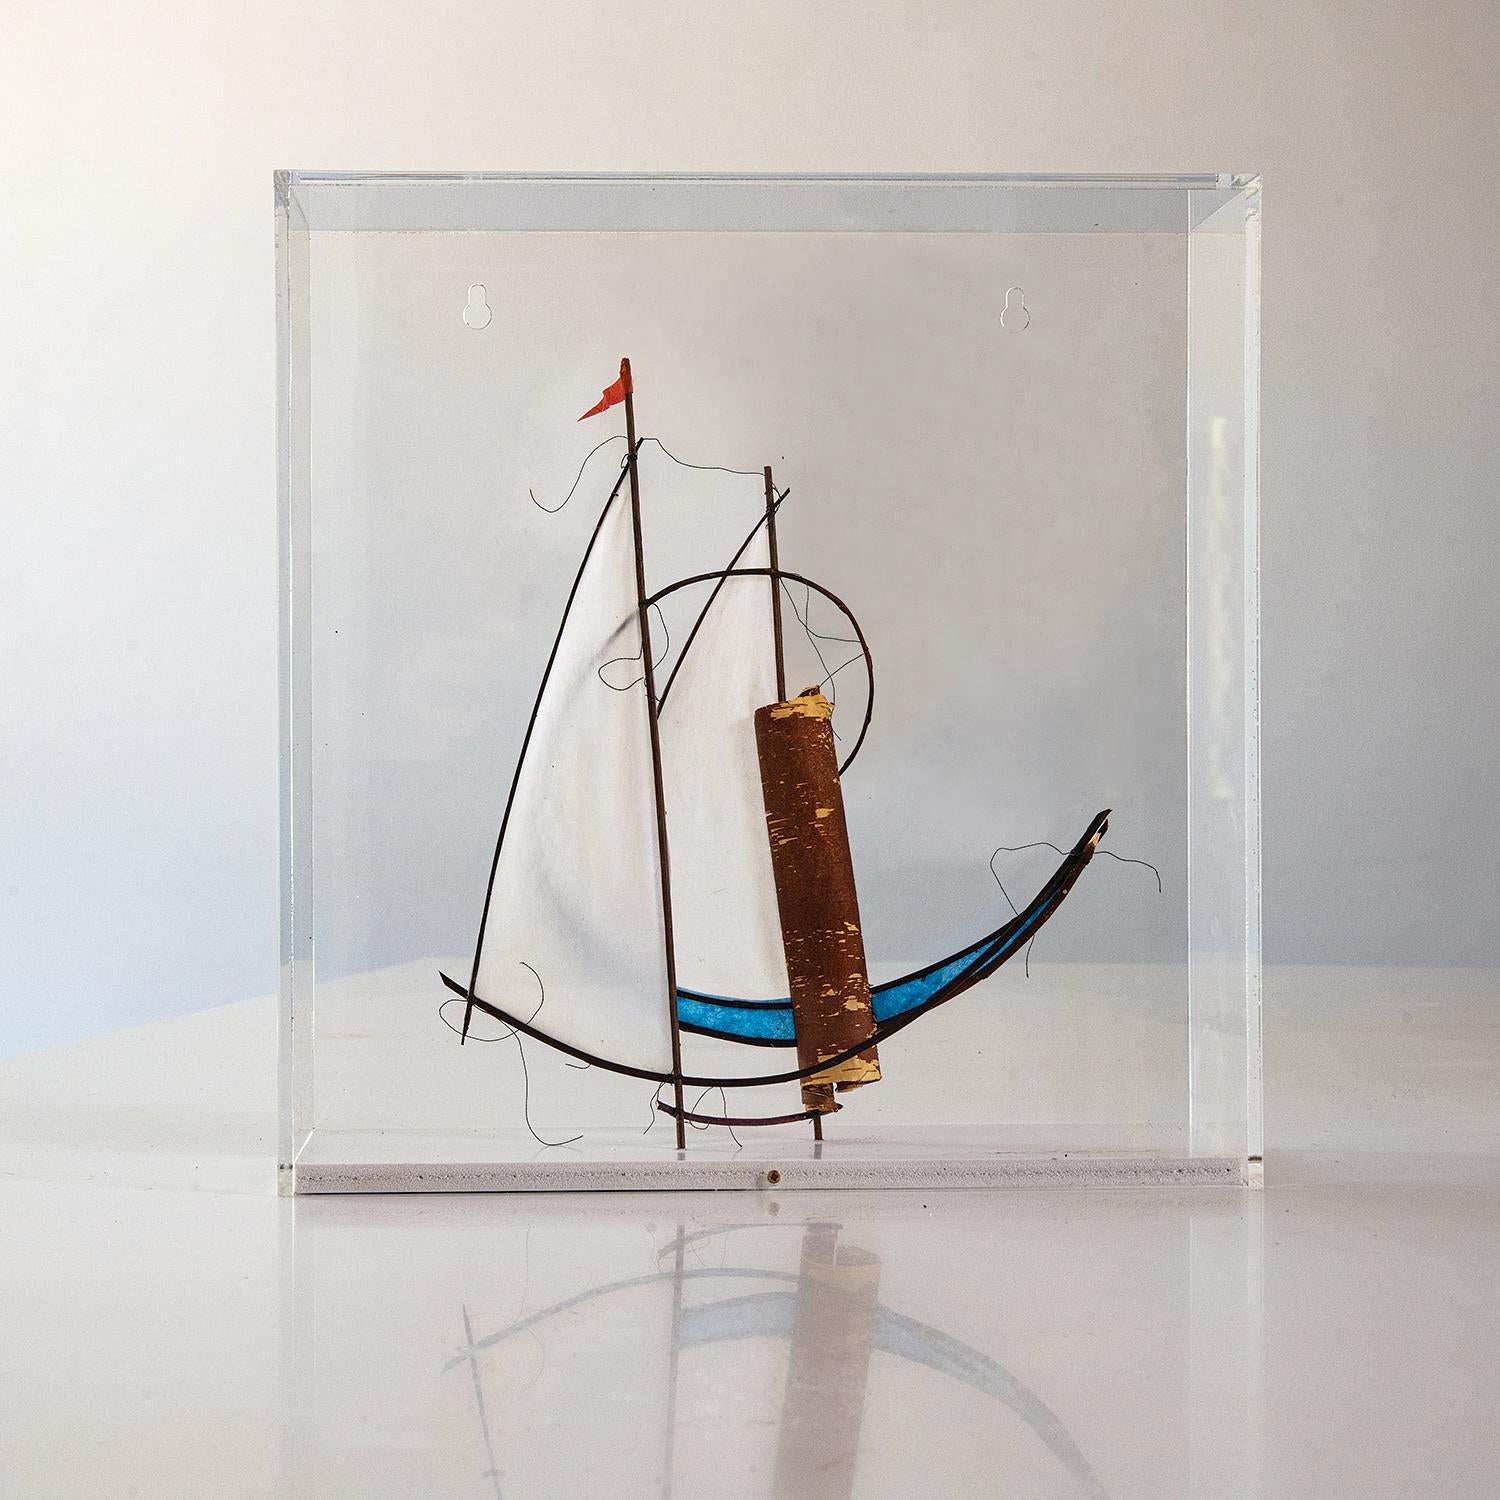 Paper Sculpture IV (2020) fait partie d'une série d'objets abstraits ressemblant à des bateaux, réalisés par la sculptrice danoise Jane Balsgaard. La construction minimaliste se compose de bambou, de piassava, de saule, de fil de pêche, de papier